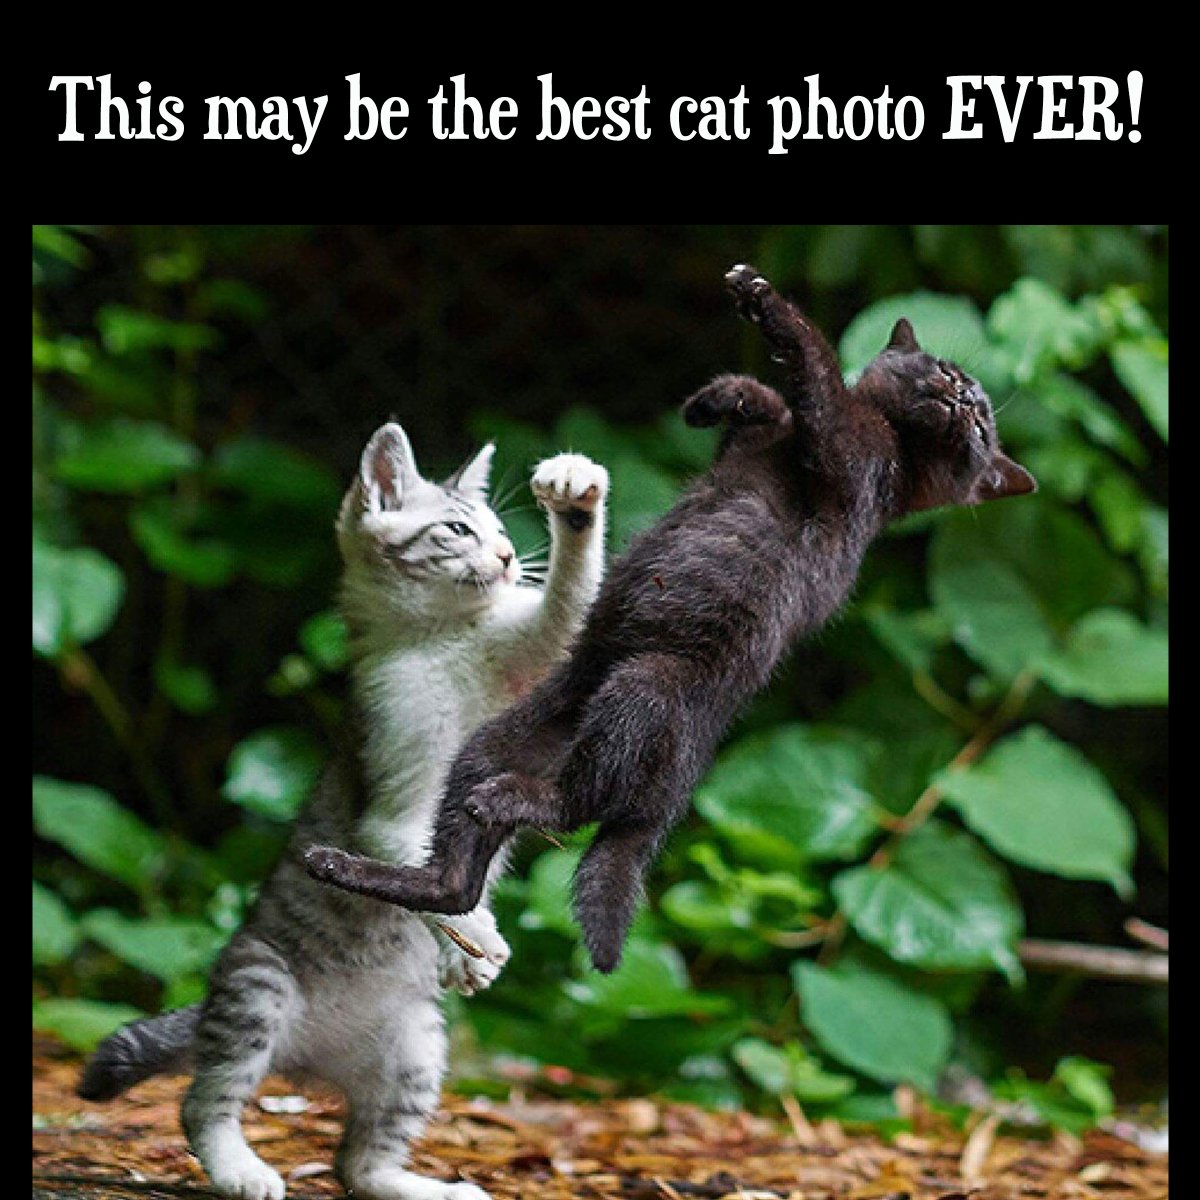 100% 🤣

#ThursdayFunny #Cats #CatPhotos #KittenFight #CatsOfTwitter